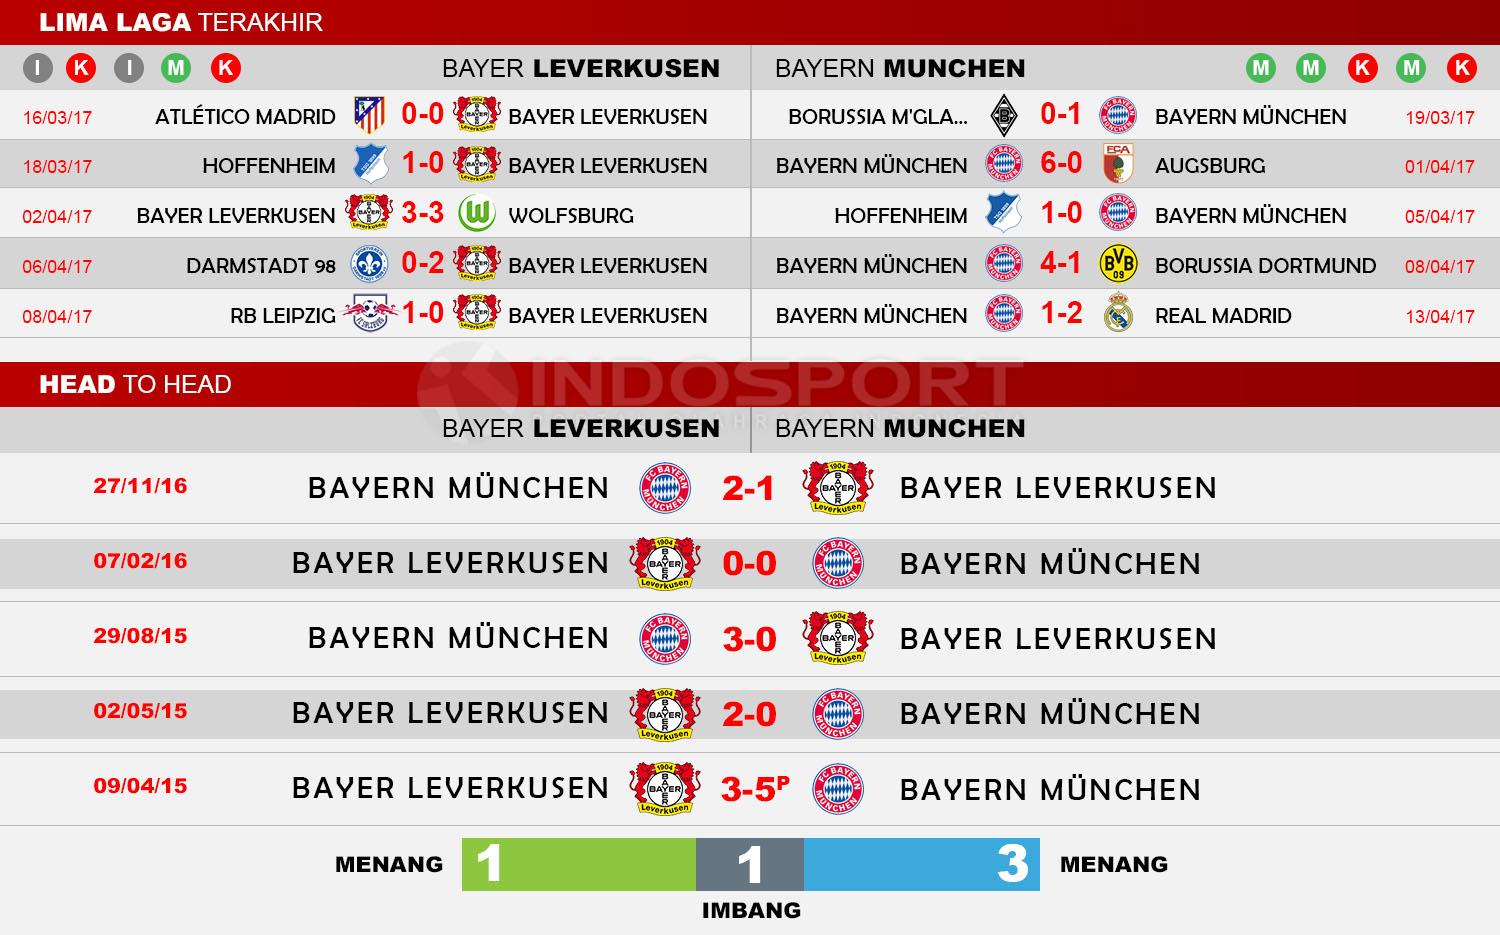 Head to Head Bayer Leverkusen vs Bayern Munchen. Copyright: Indosport/Soccerway